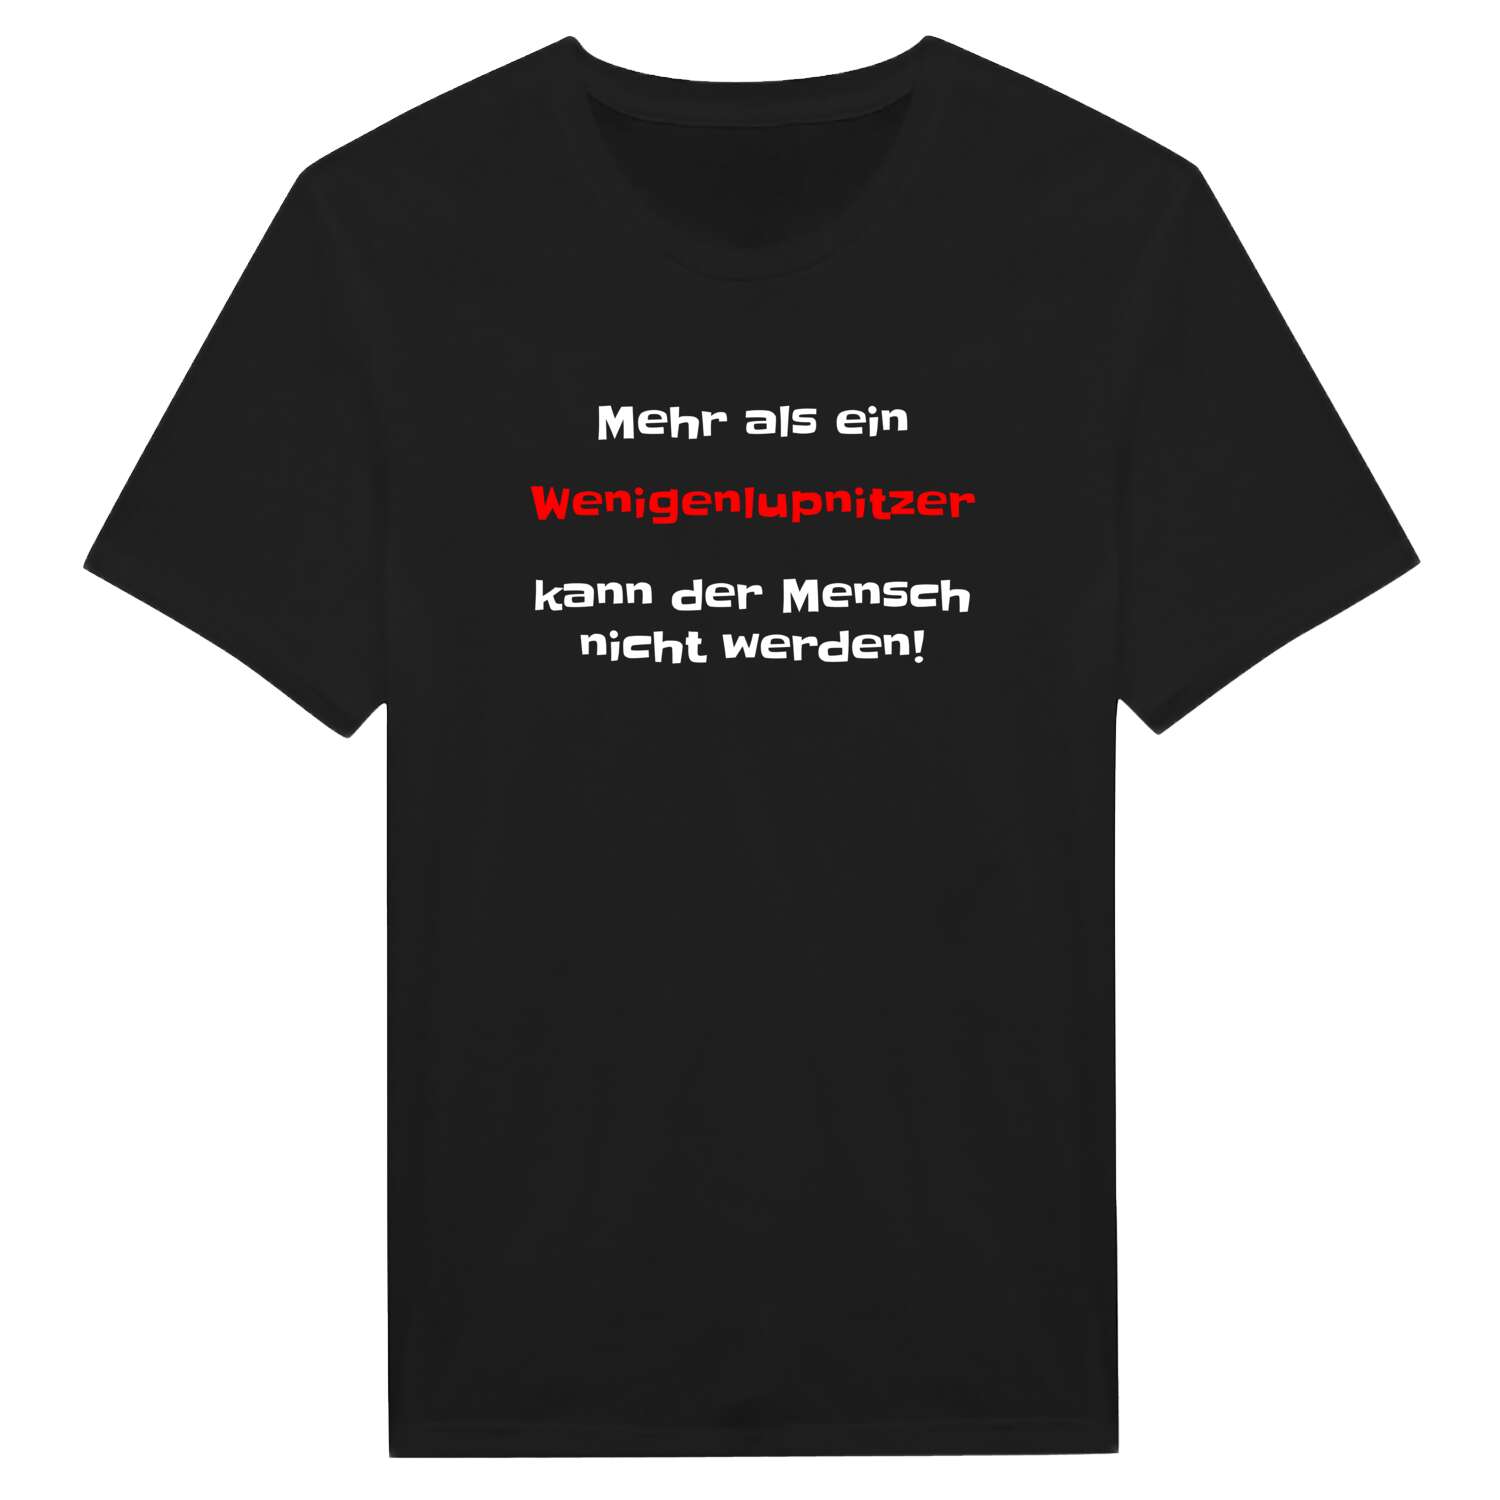 Wenigenlupnitz T-Shirt »Mehr als ein«